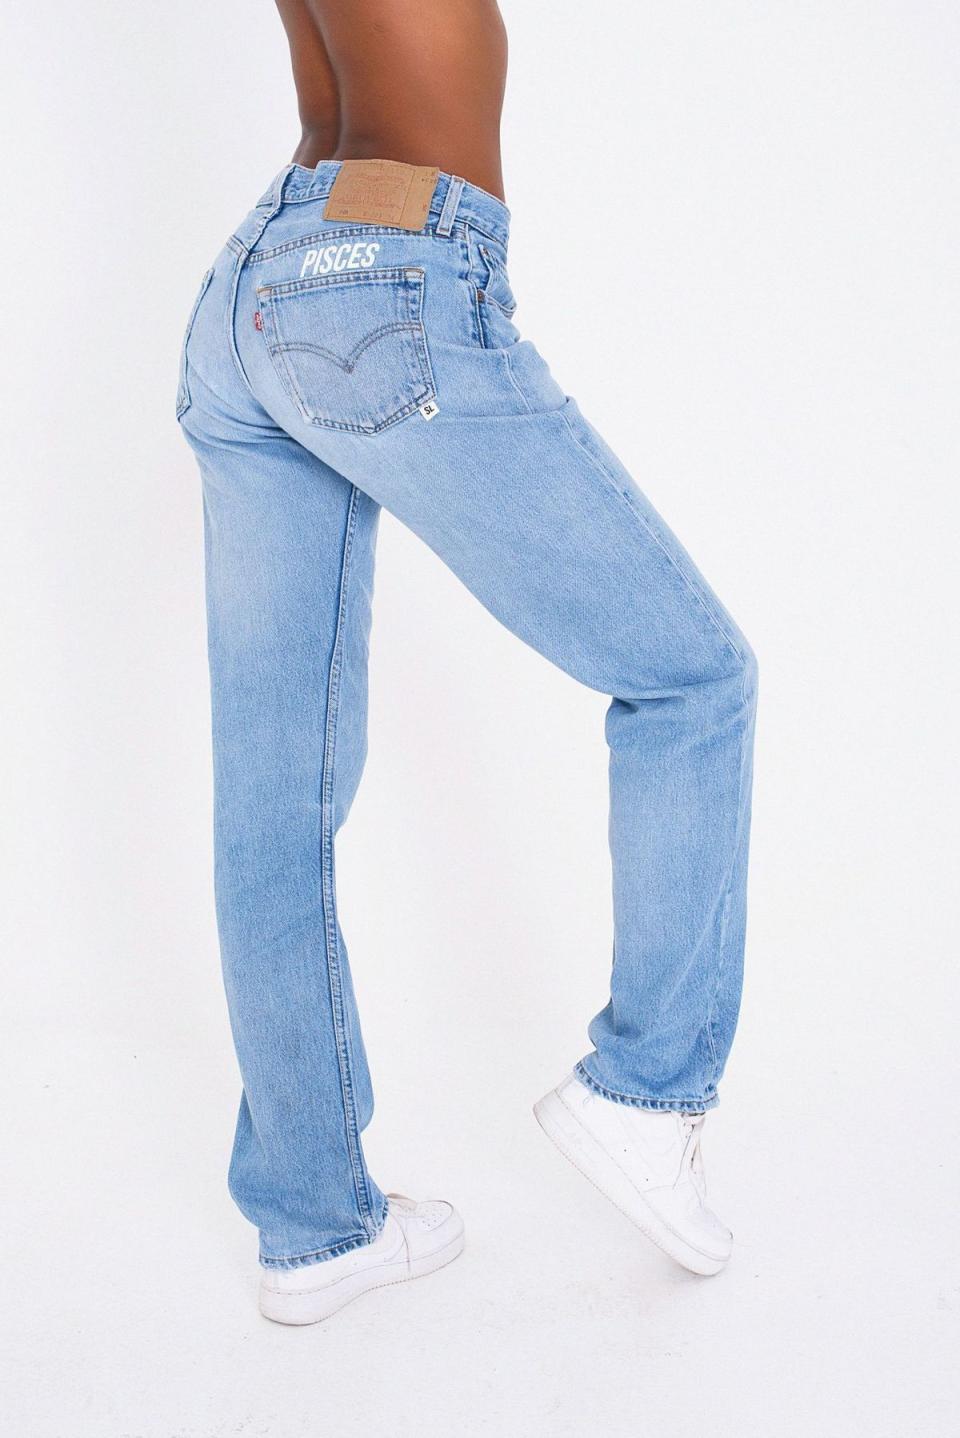 3) Pisces Jeans